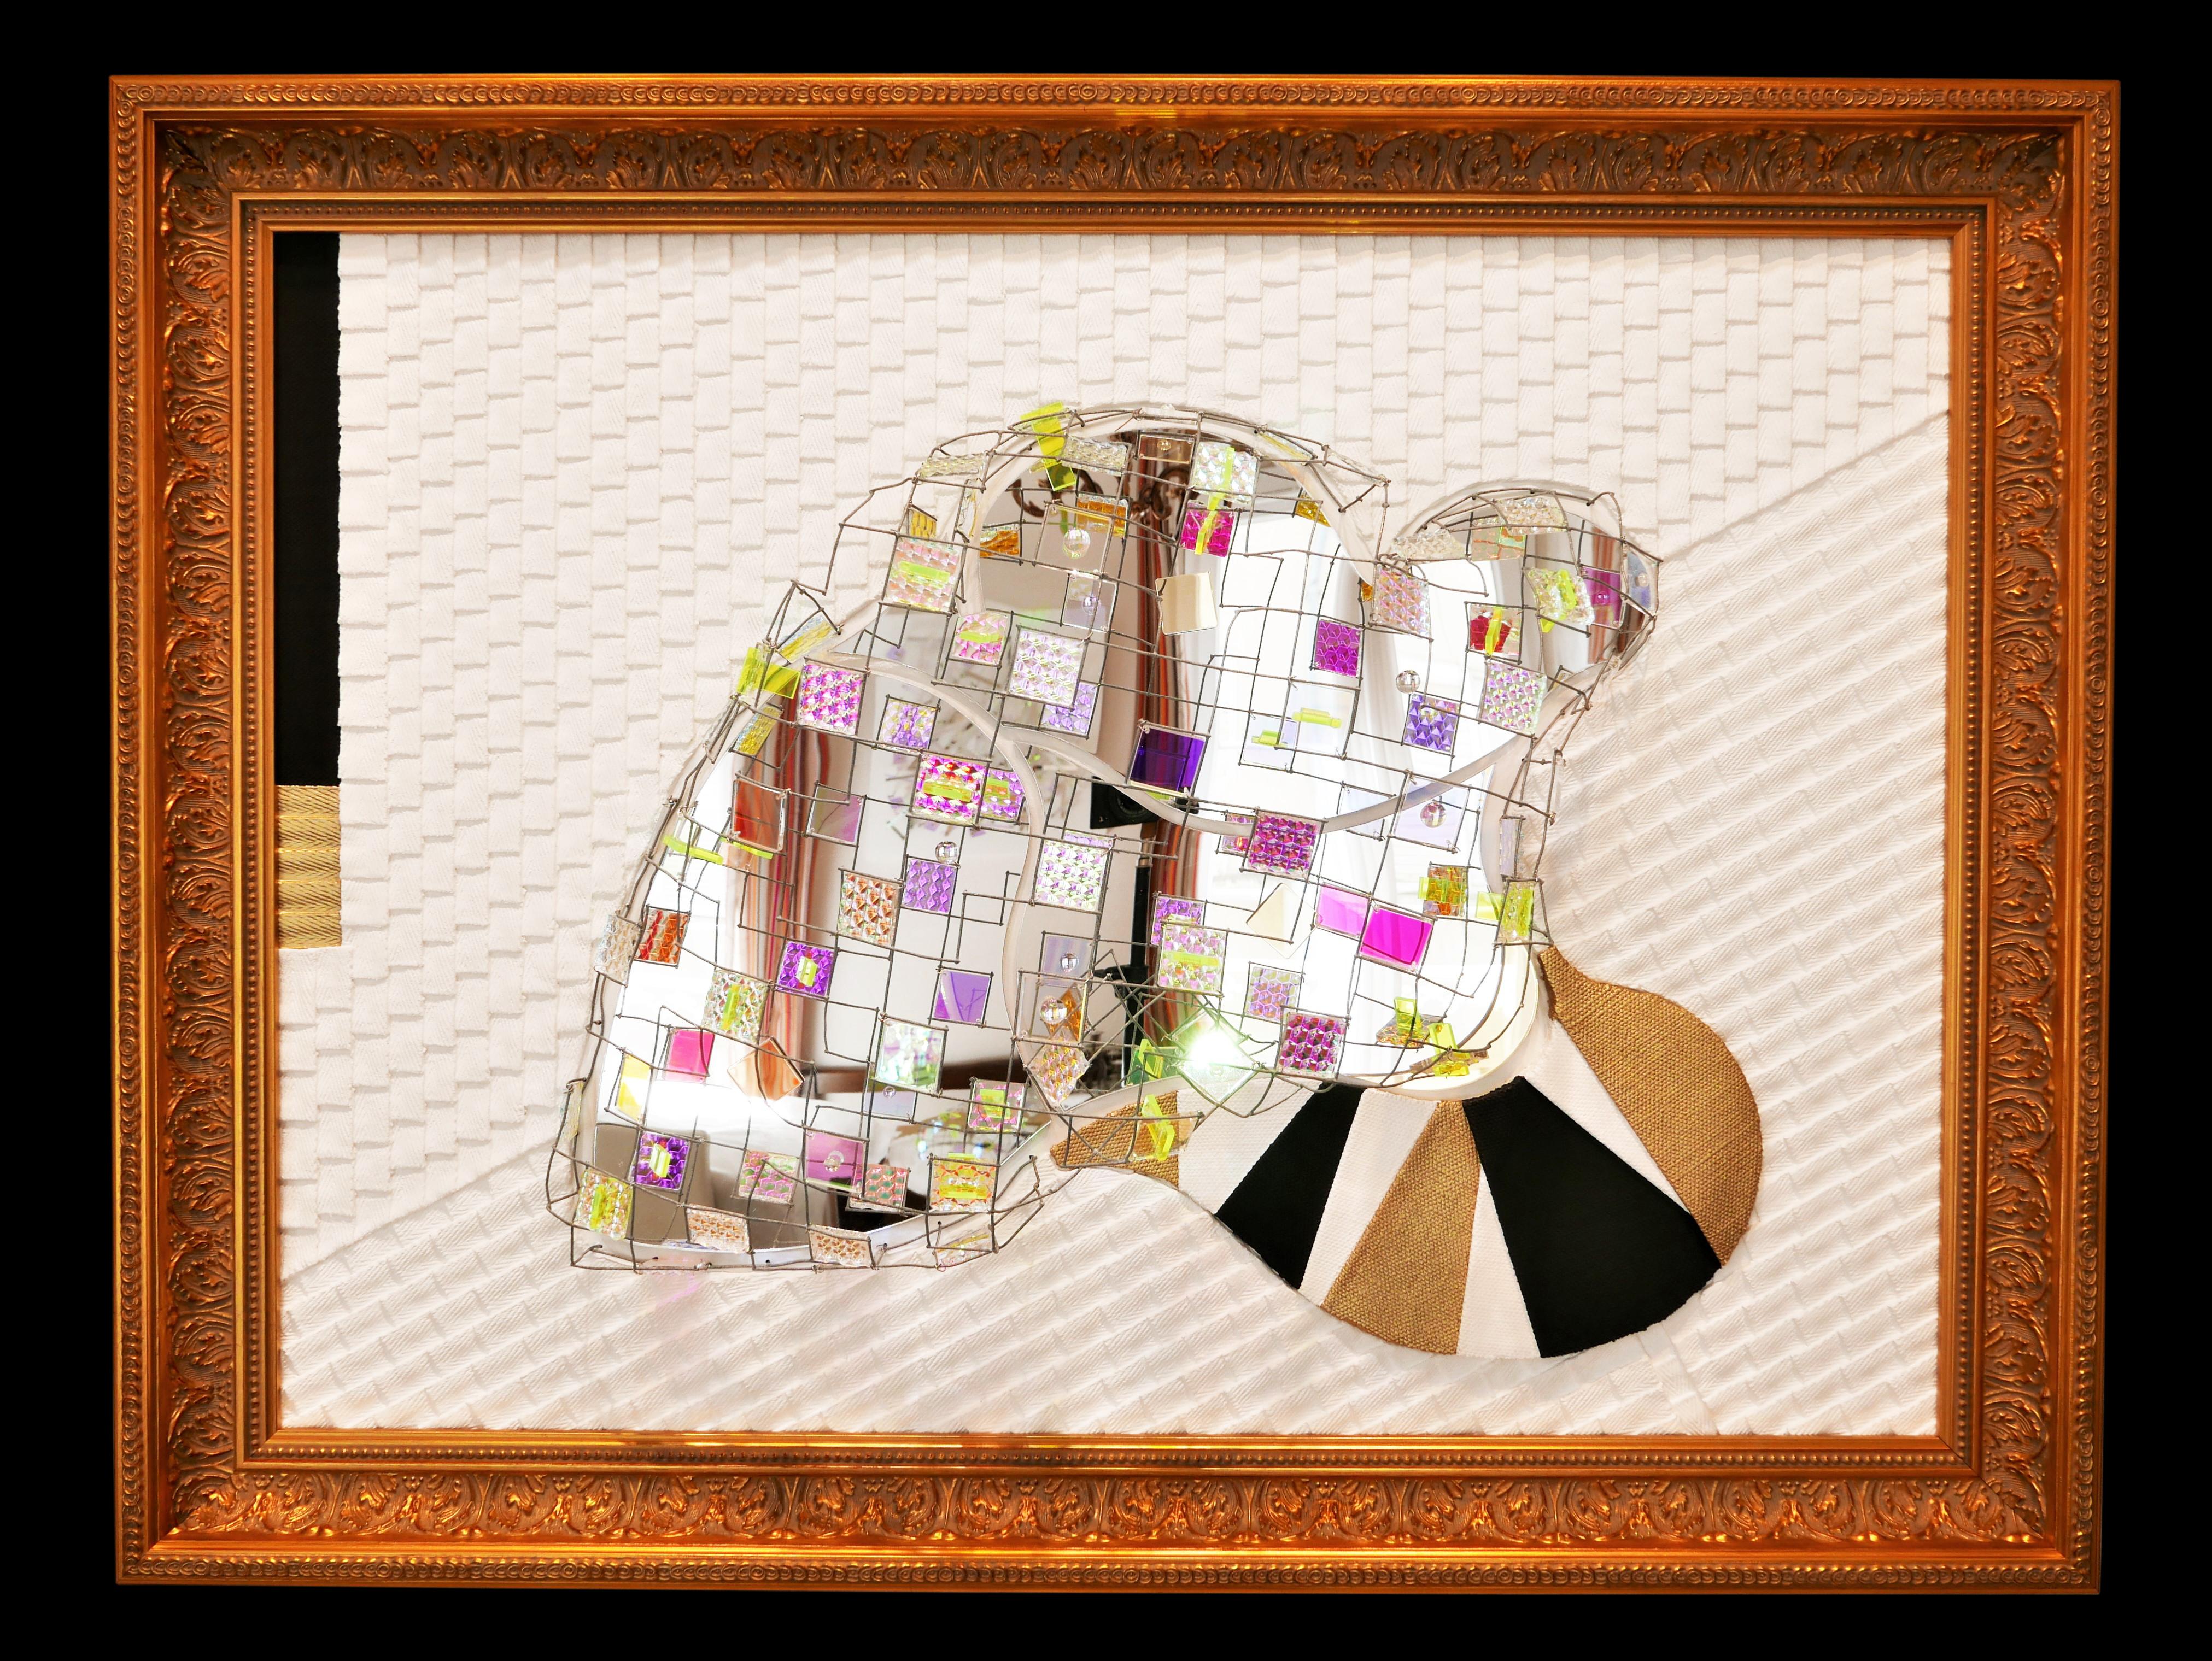 Leinen, Leinenband, Acrylglas (Spiegel, irisierend), Gesso, goldenes Wachs, Draht und Acrylfarbe auf Platte

Eric Beauplace ist ein 1962 geborener französischer zeitgenössischer bildender Künstler, der in Saint Germain-en-Laye, Frankreich, lebt und